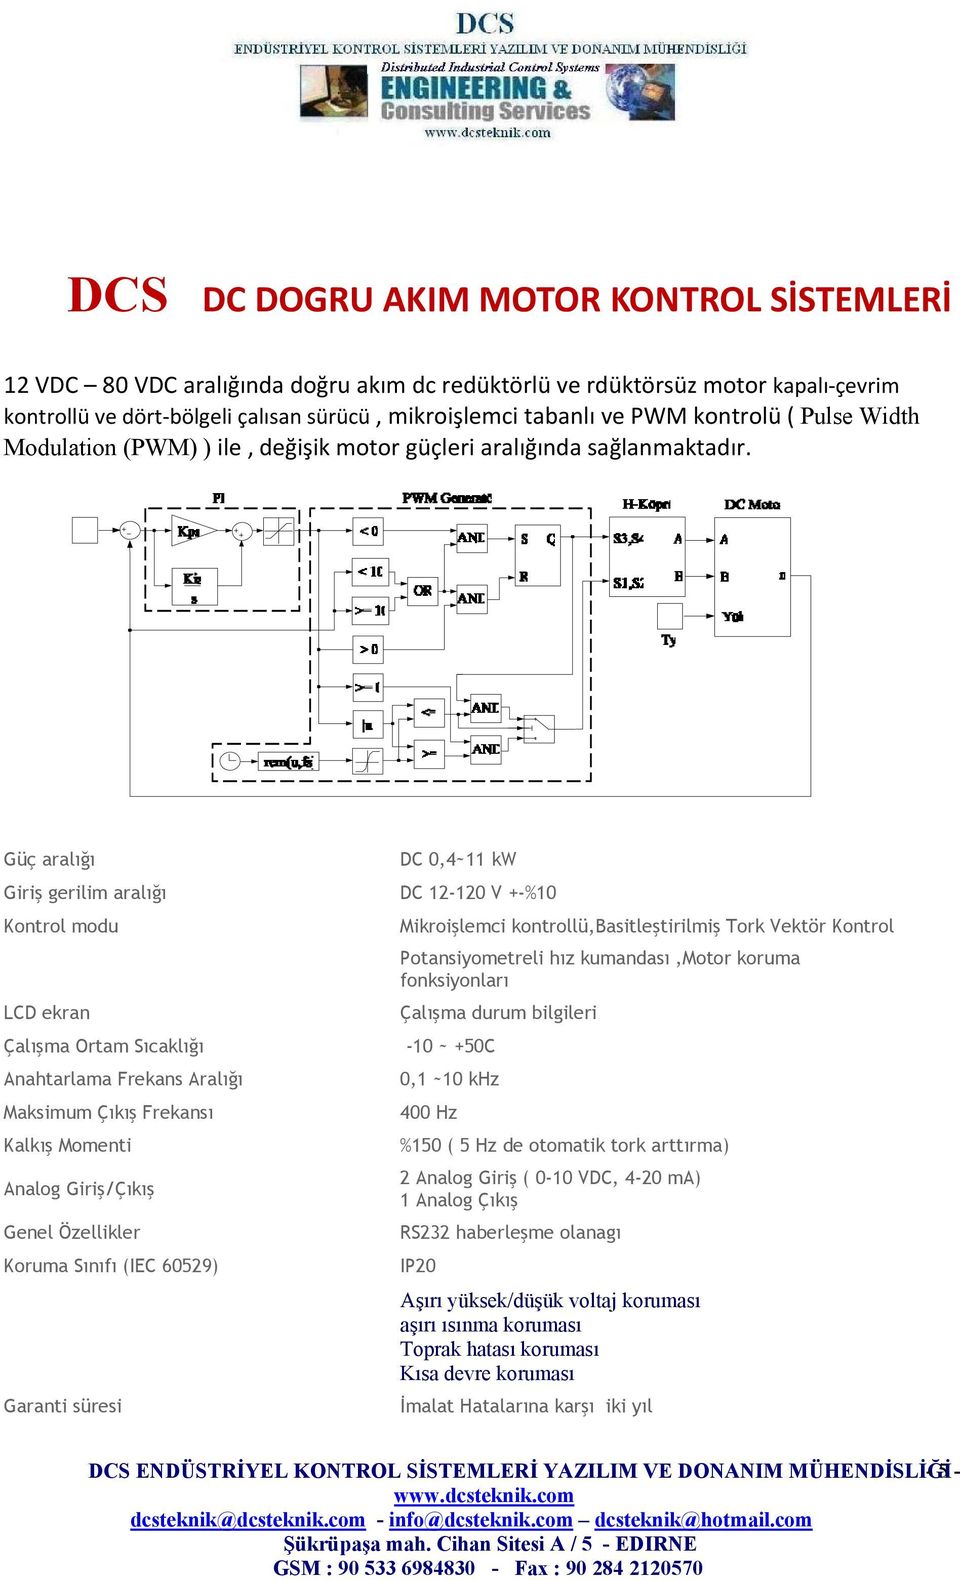 Sıcaklığı -10 ~ +50C Anahtarlama Frekans Aralığı Maksimum Çıkış Frekansı Kalkış Momenti Analog Giriş/Çıkış Genel Özellikler Koruma Sınıfı (IEC 60529) Garanti süresi Mikroişlemci